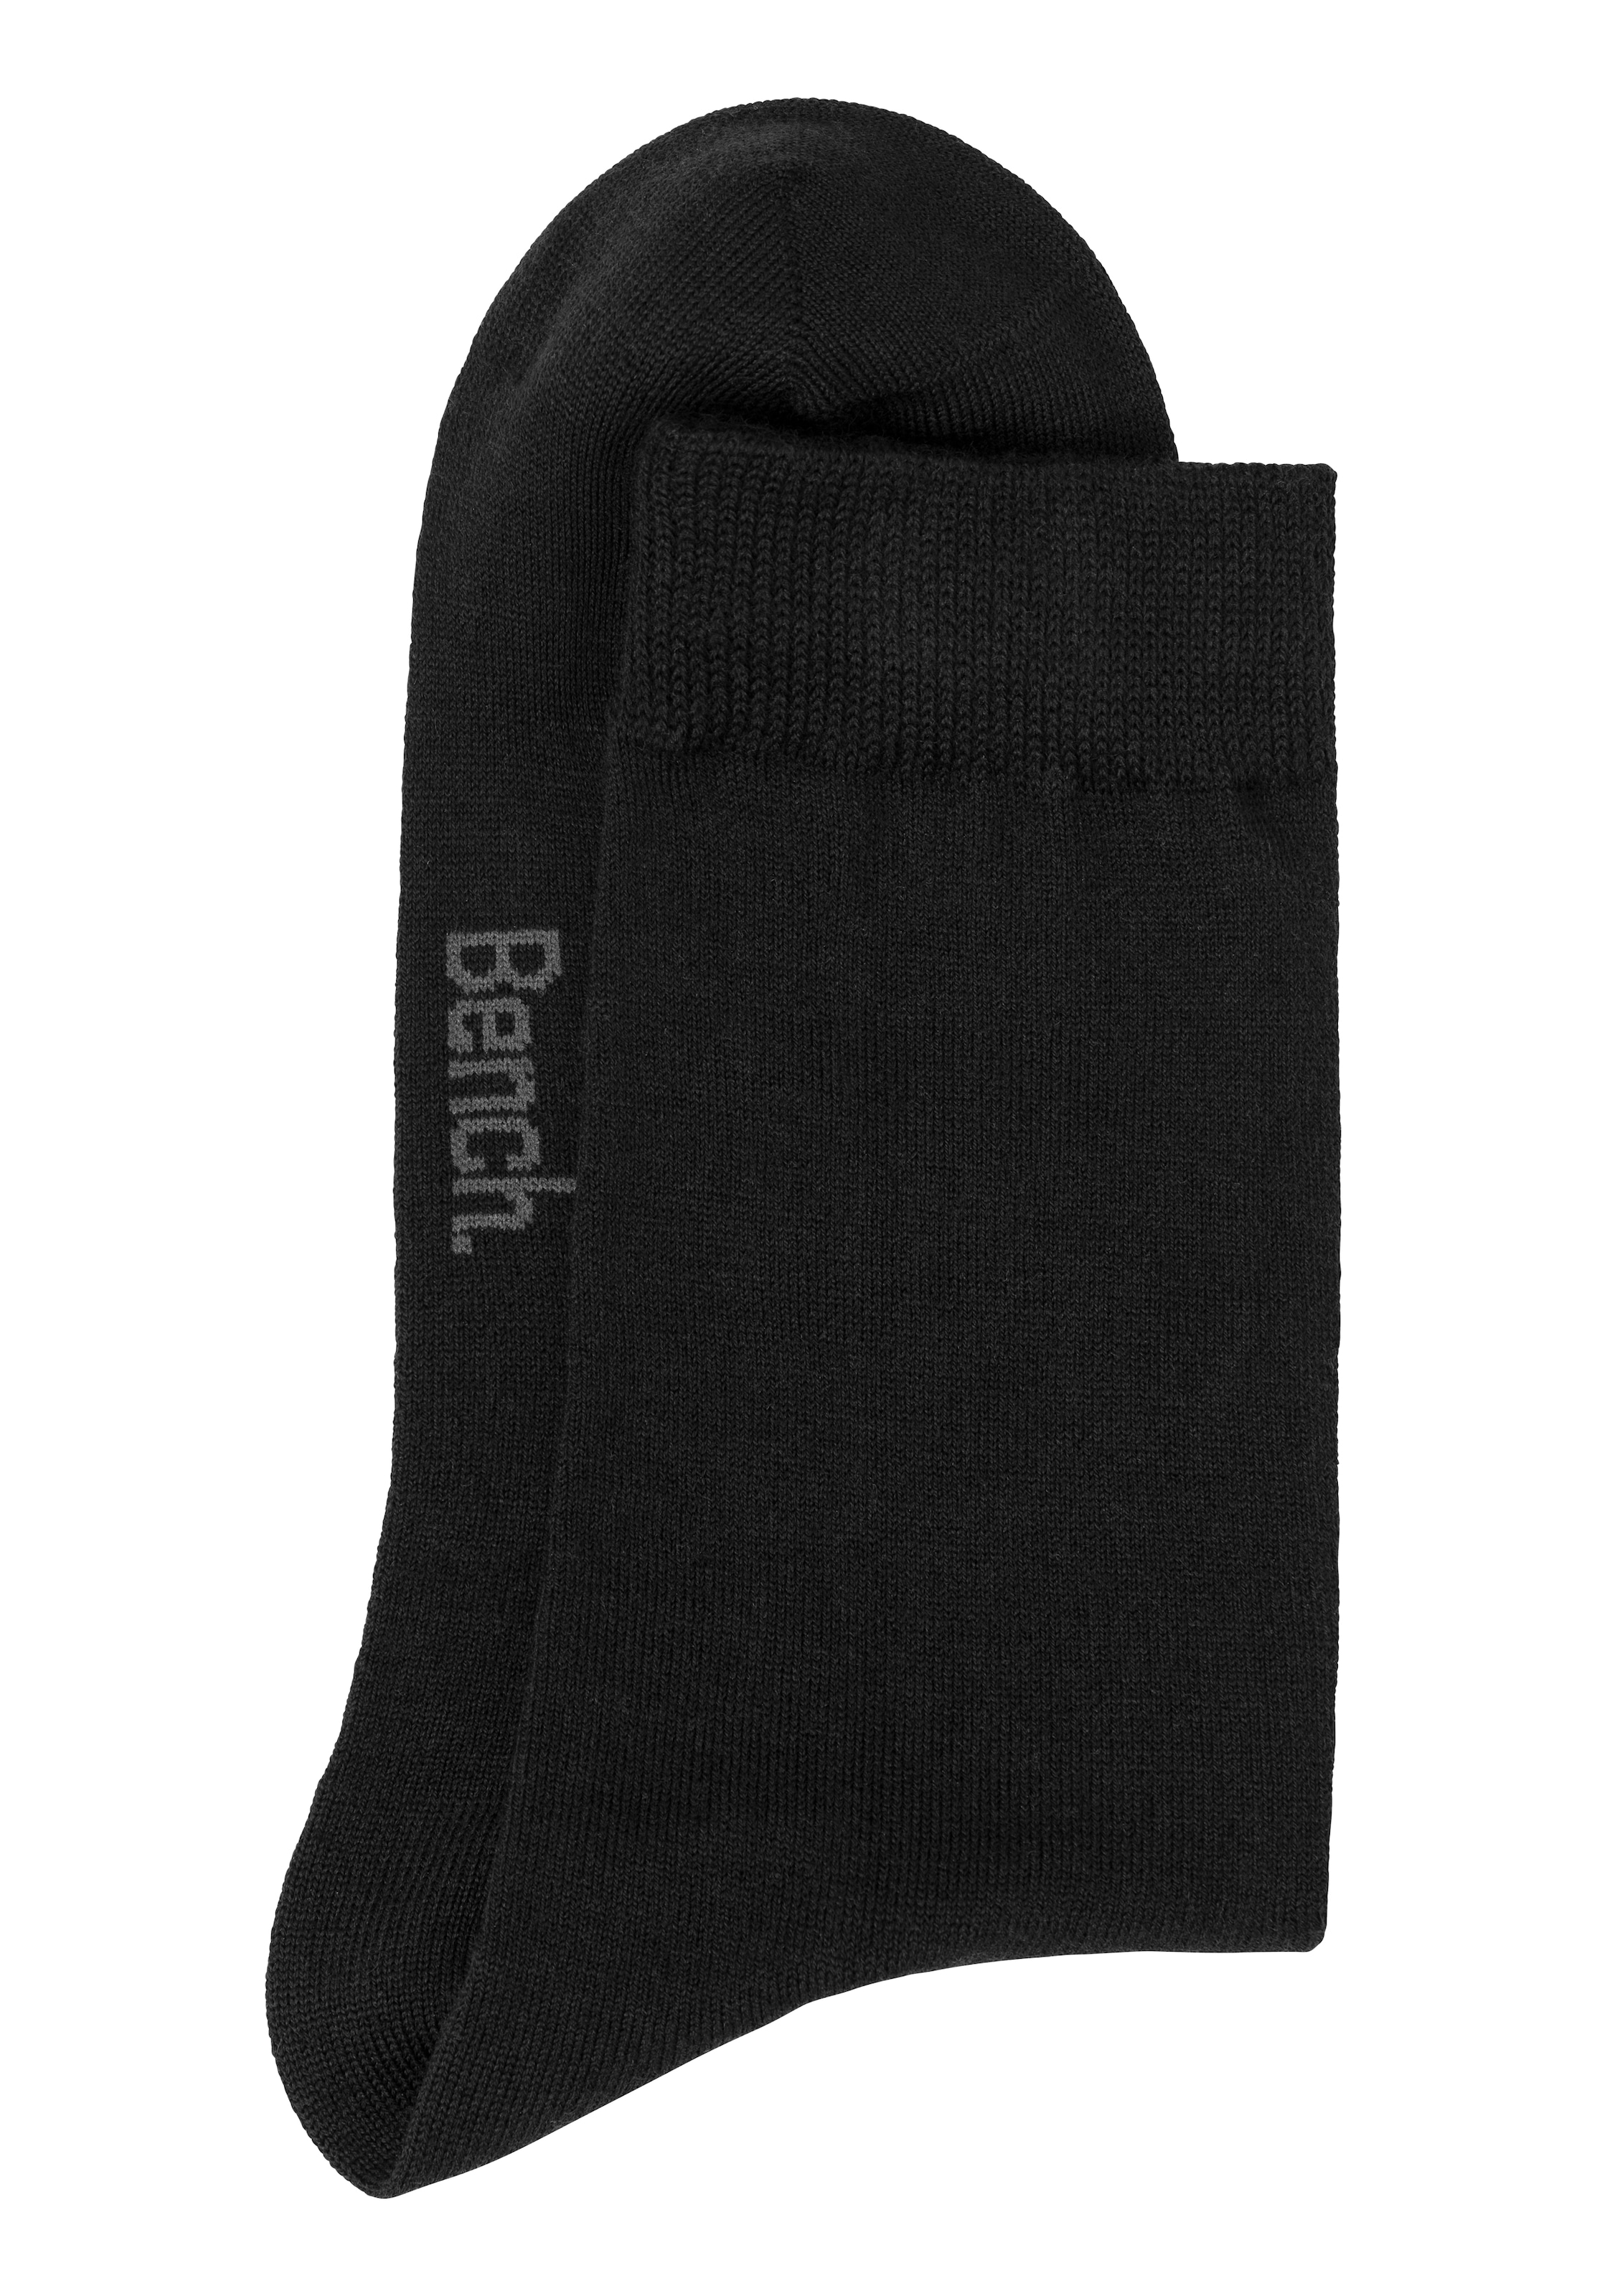 Bench. Socken, (Packung, 3 Paar), Wollsocken aus flauschigem Material